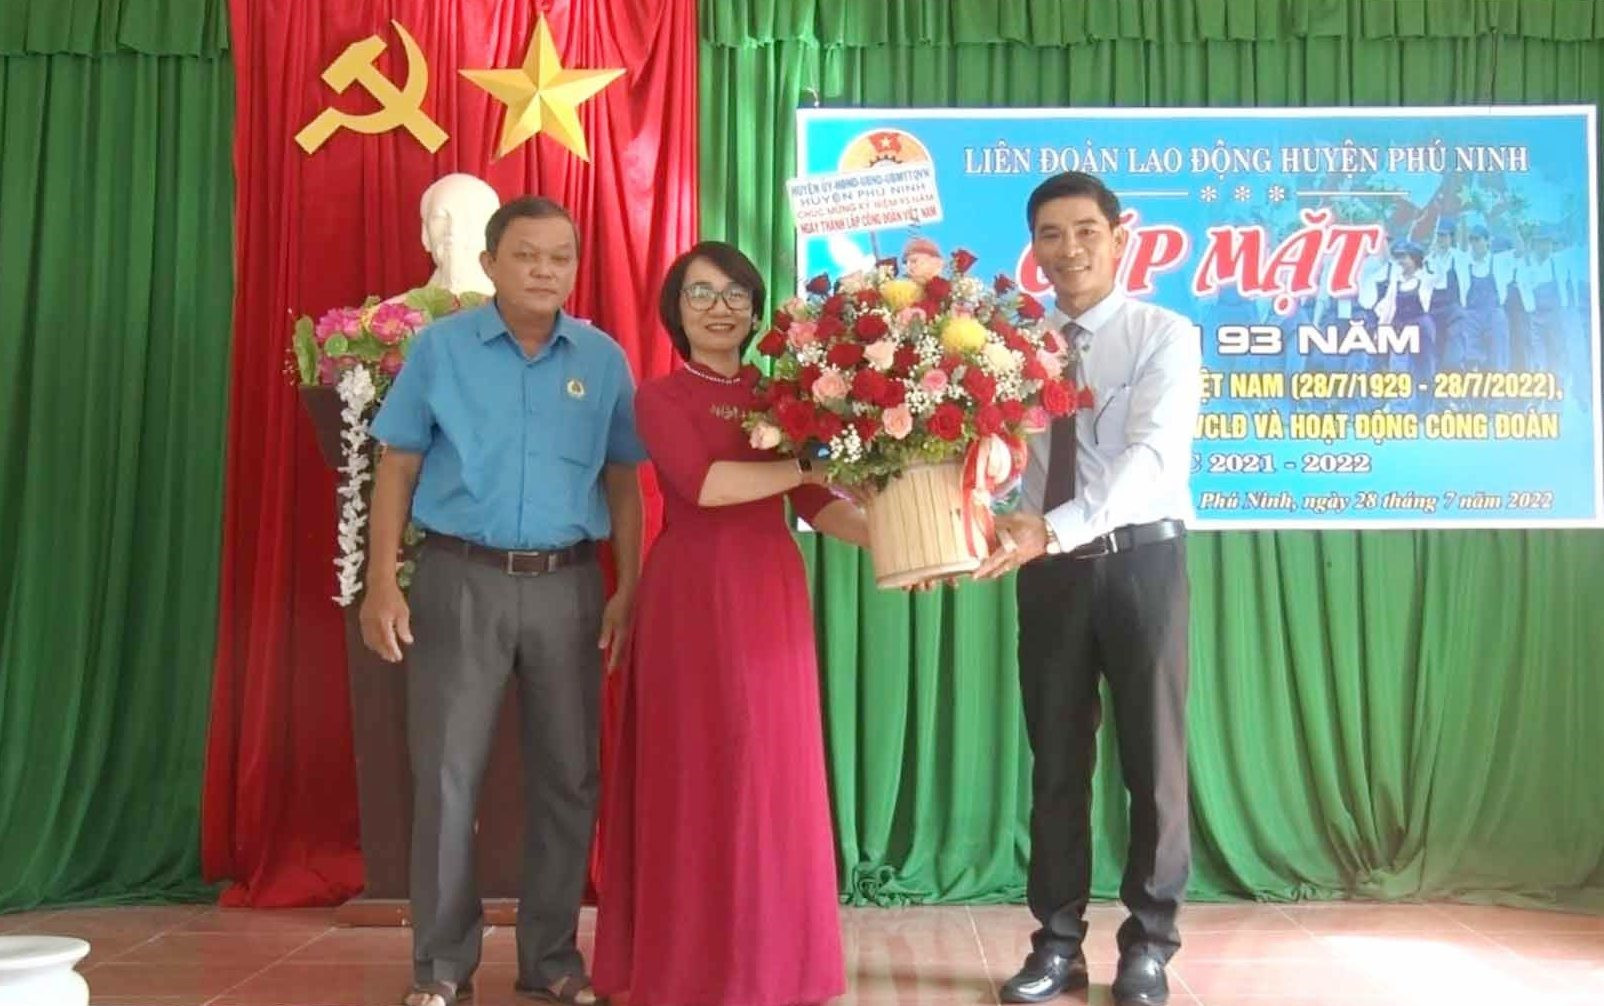 Lãnh đạo huyện Phú Ninh chúc mừng LĐLĐ huyện nhân dịp kỷ niệm 93 năm ngày thành lập Công đoàn Việt Nam. Ảnh: V.Đ